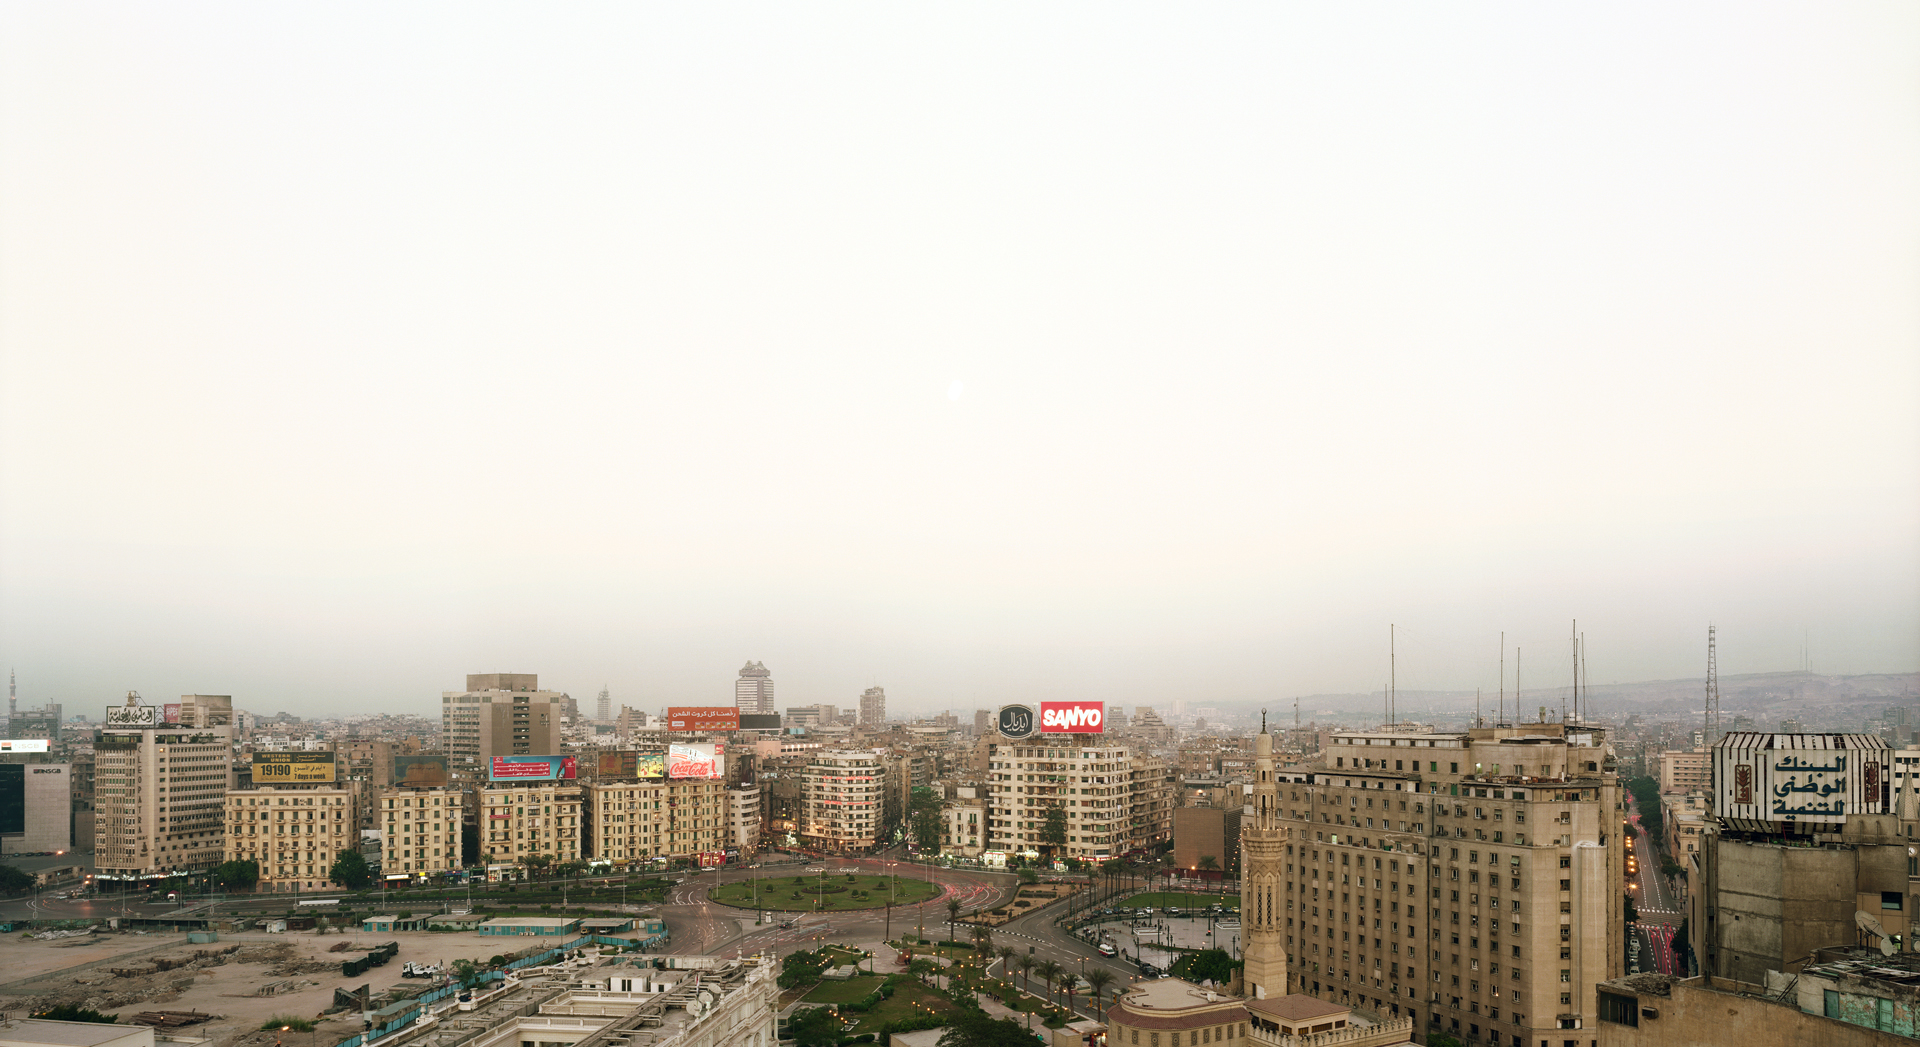 Midan Tahrir, Al-Qahira (Le Caire), 2007